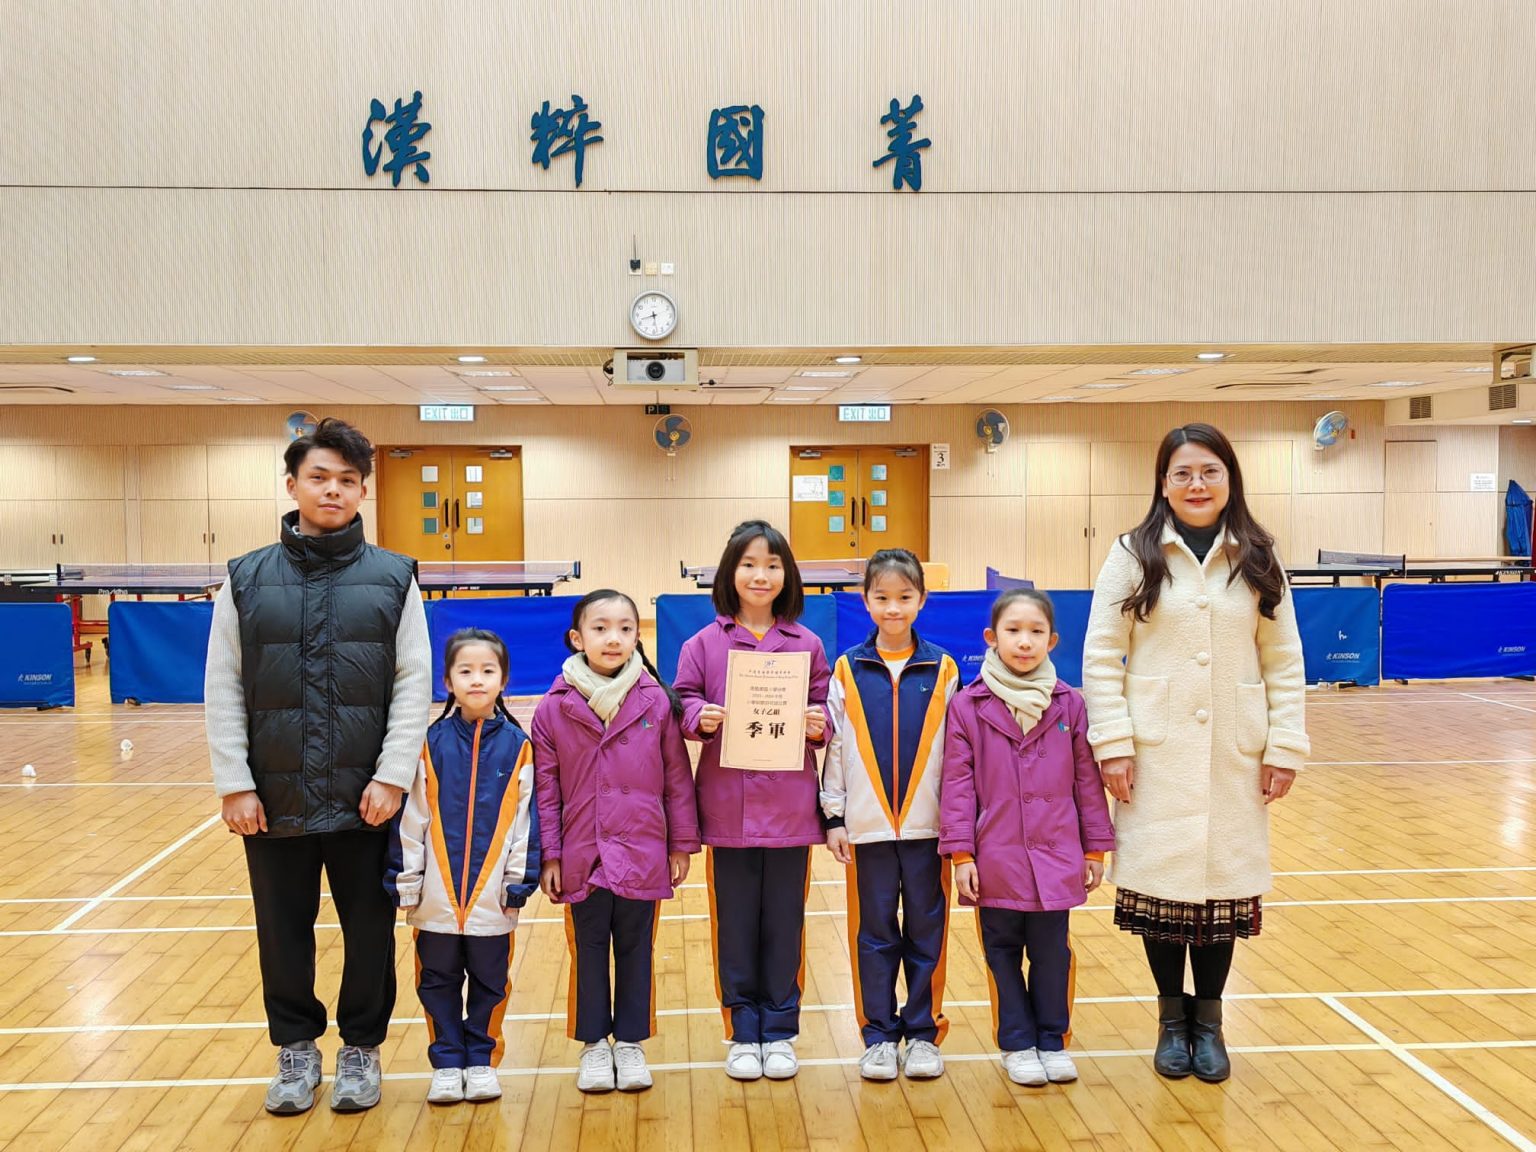 恭喜本校女子兵乒球隊在港島東區小學校際兵乒球比賽中獲得女子乙組季軍!